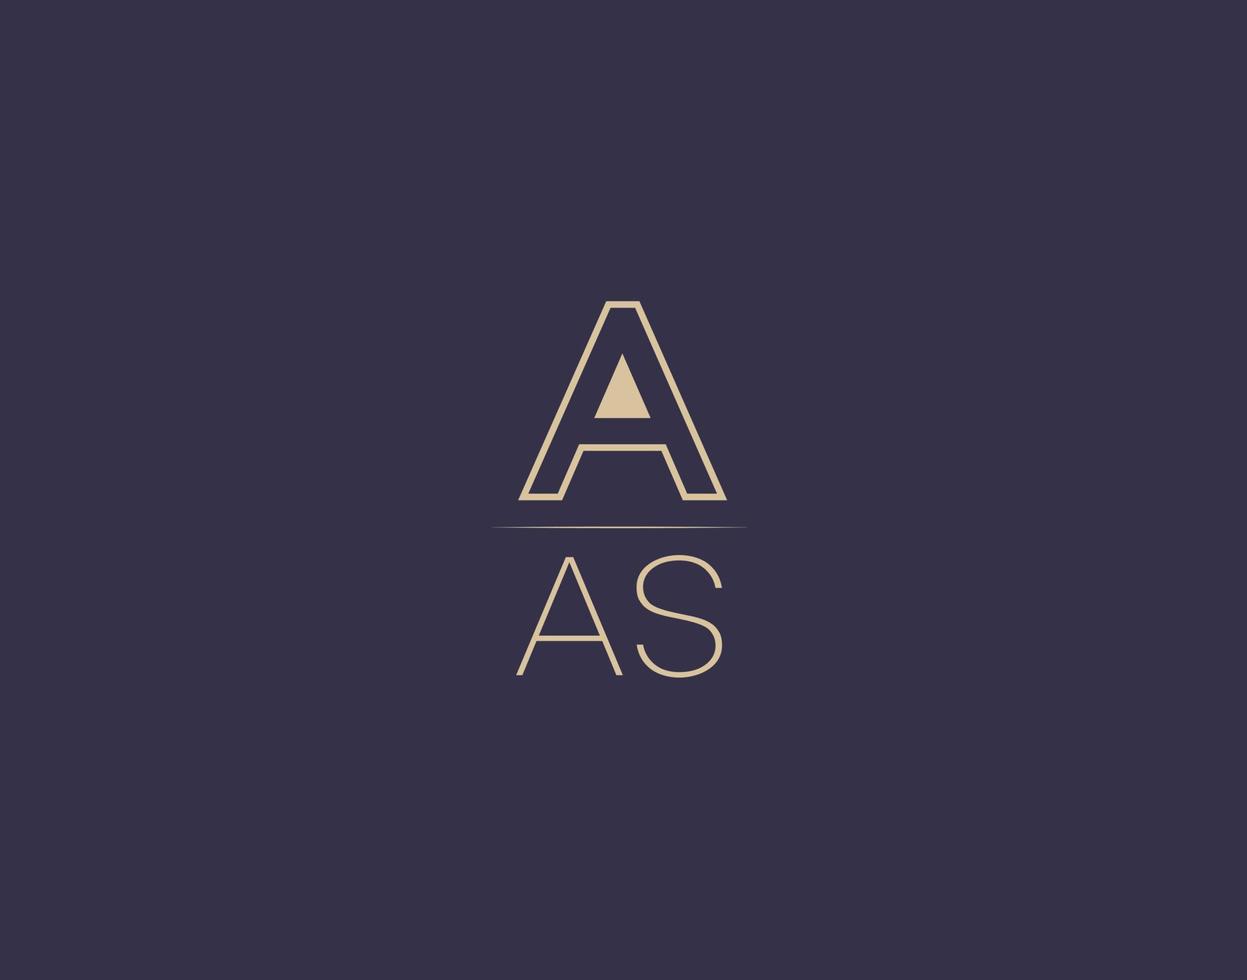 AAS letter logo design modern minimalist vector images